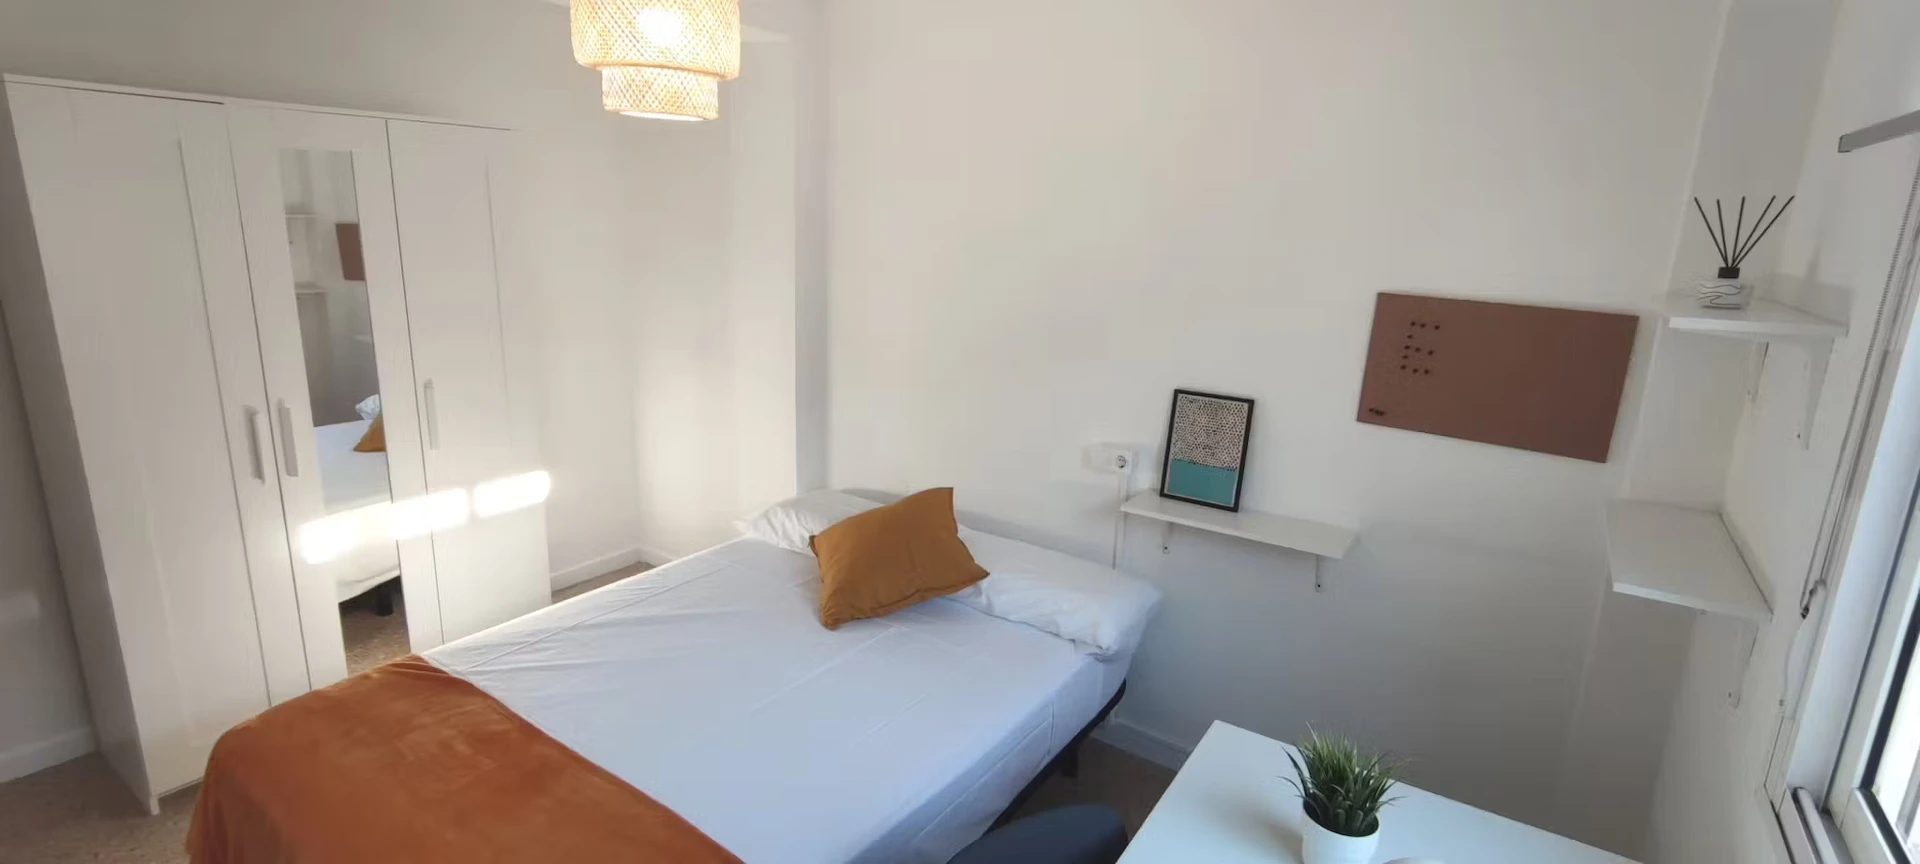 Quarto para alugar com cama de casal em Tarragona